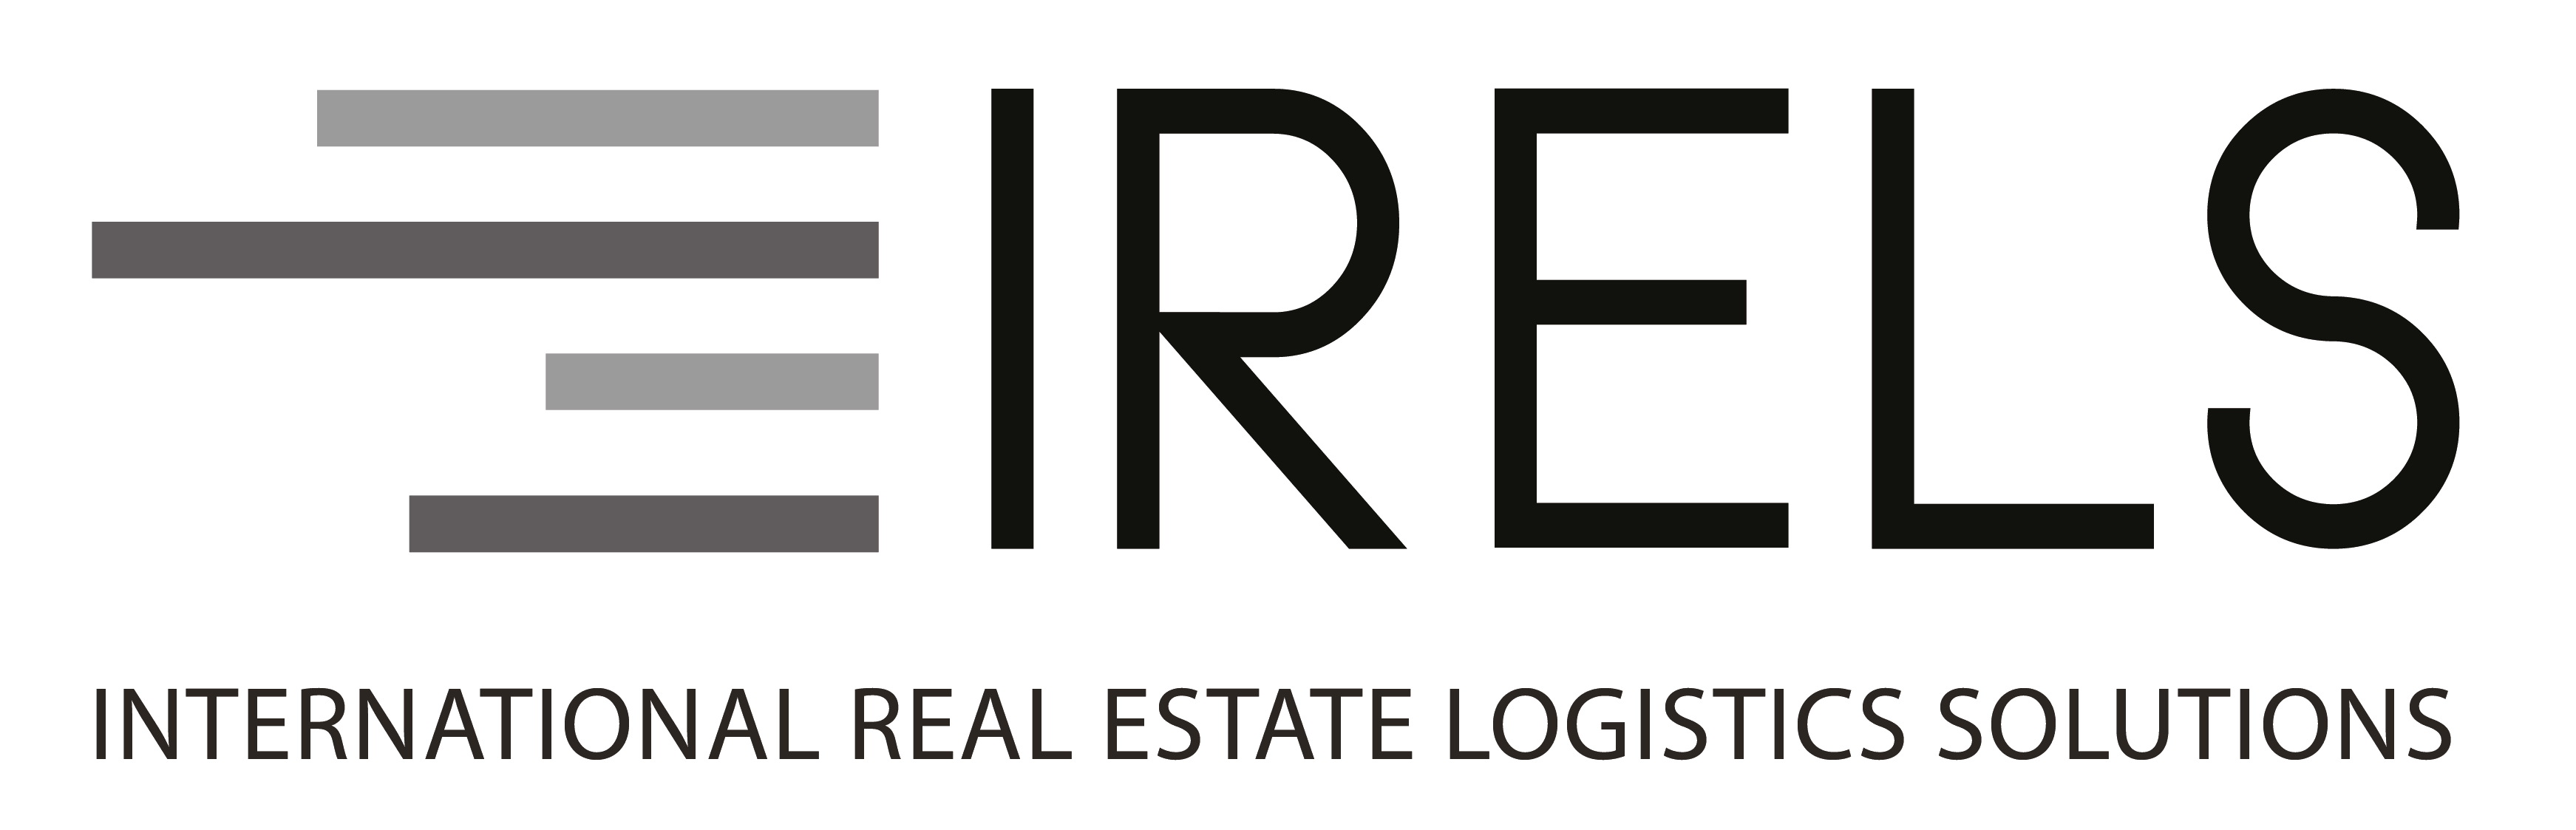 Logicest is Member - IRELS International Real Estate Logistics Solution